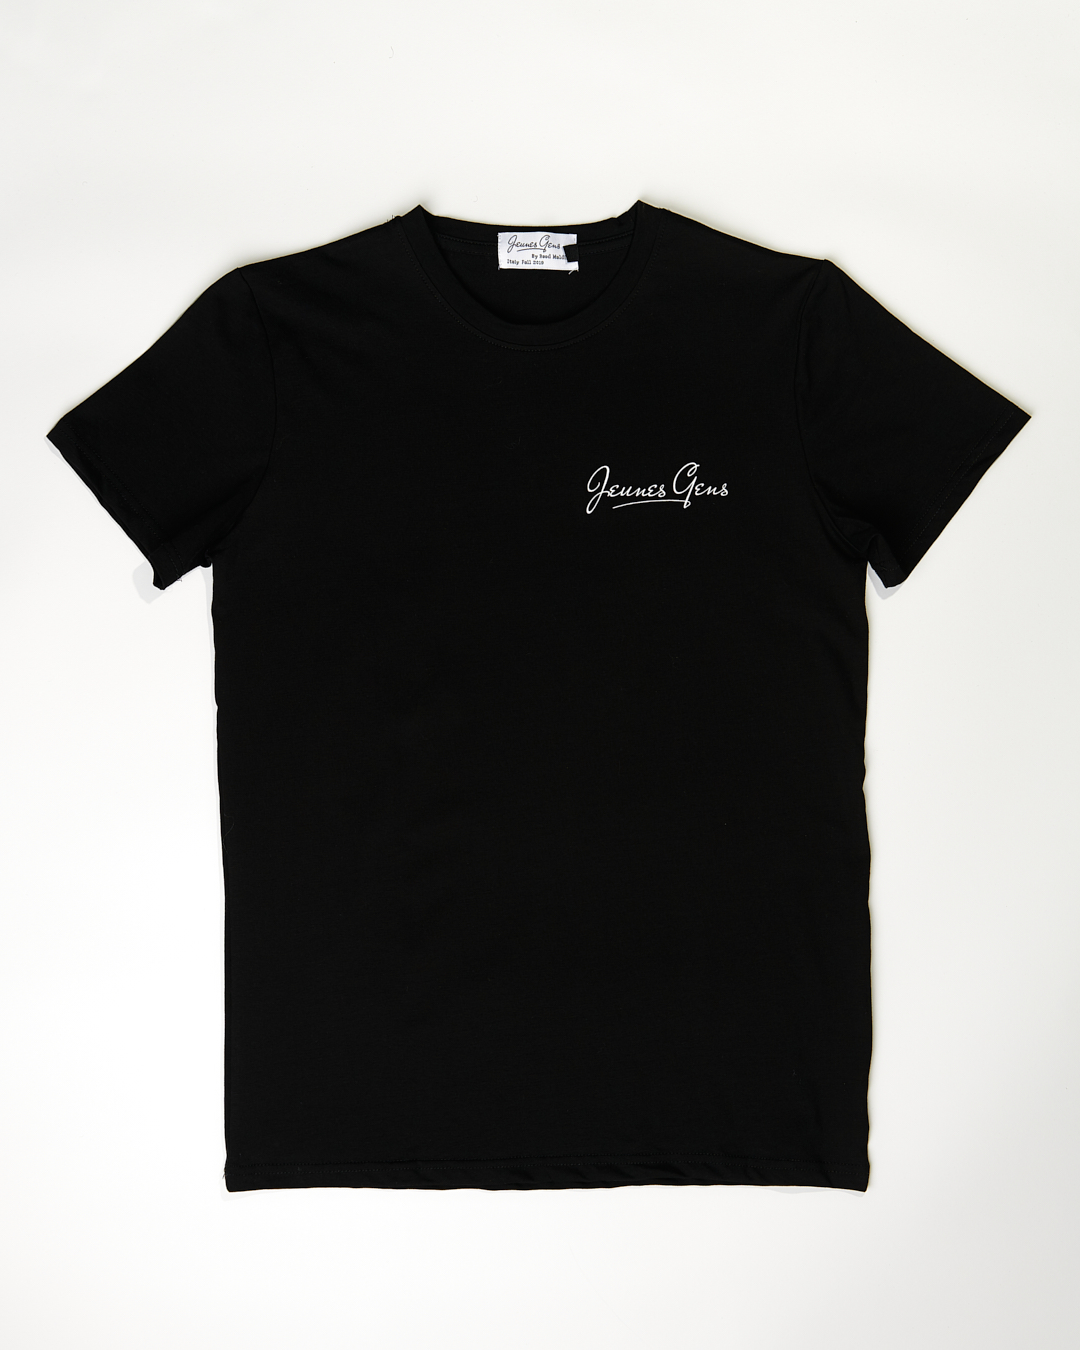 Jeunes Gens Black T-shirt - Jeunes Gens